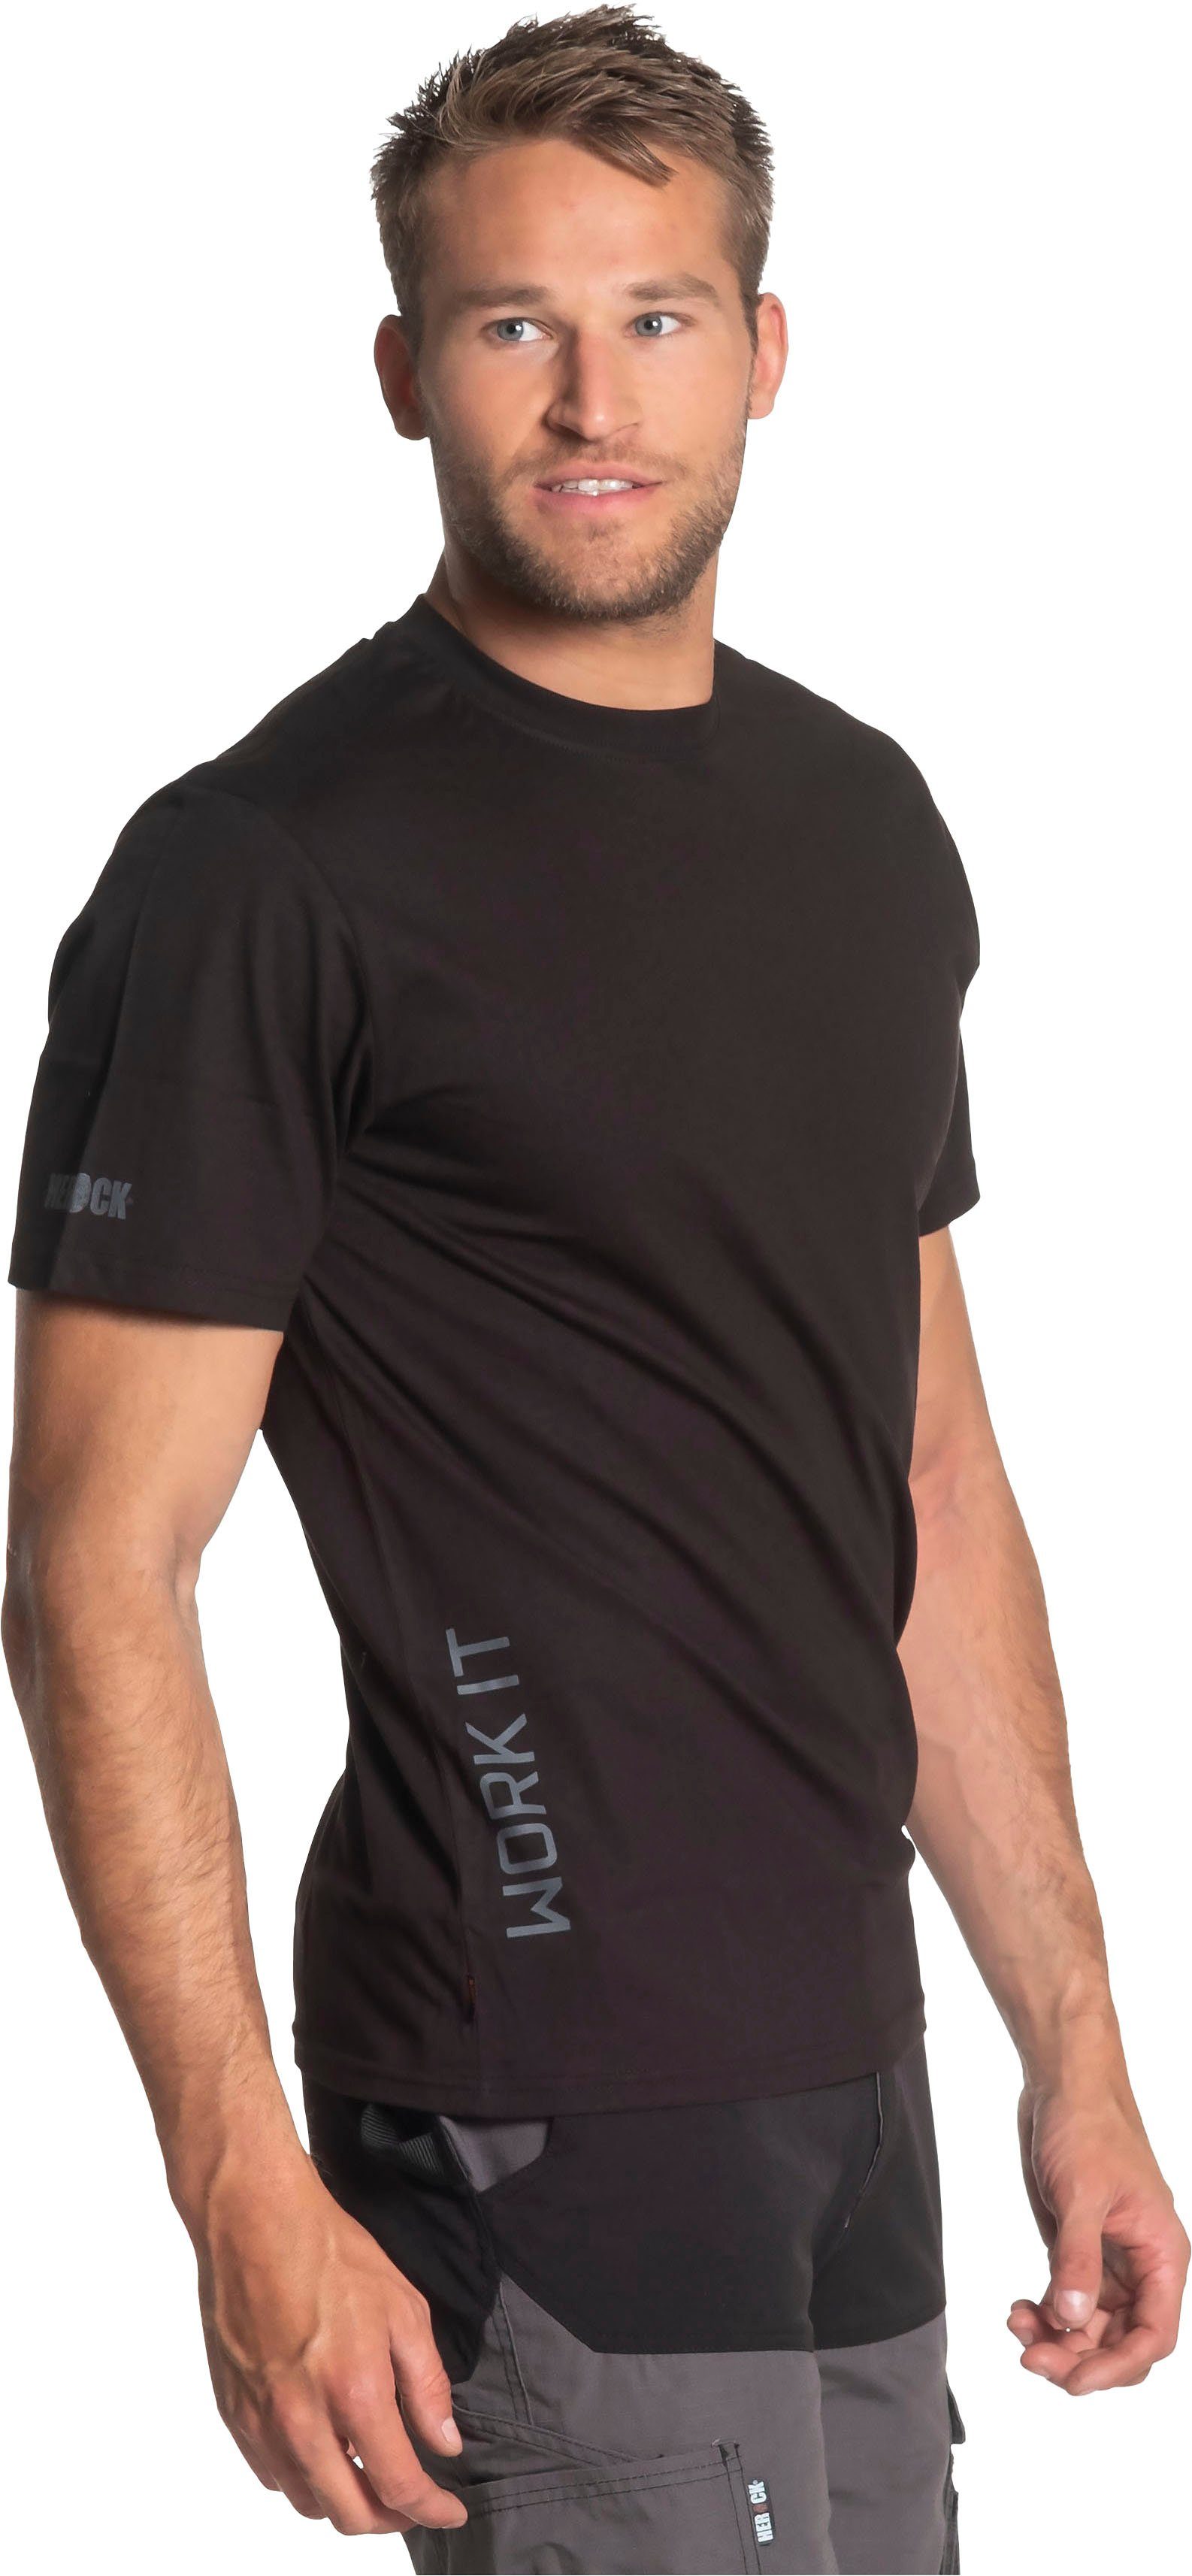 T-Shirt kurze T-Shirt schwarz Ärmel Rippstrickkragen kurze Callius Herock Rundhalsausschnitt, Herock®-Aufdruck, Ärmel,